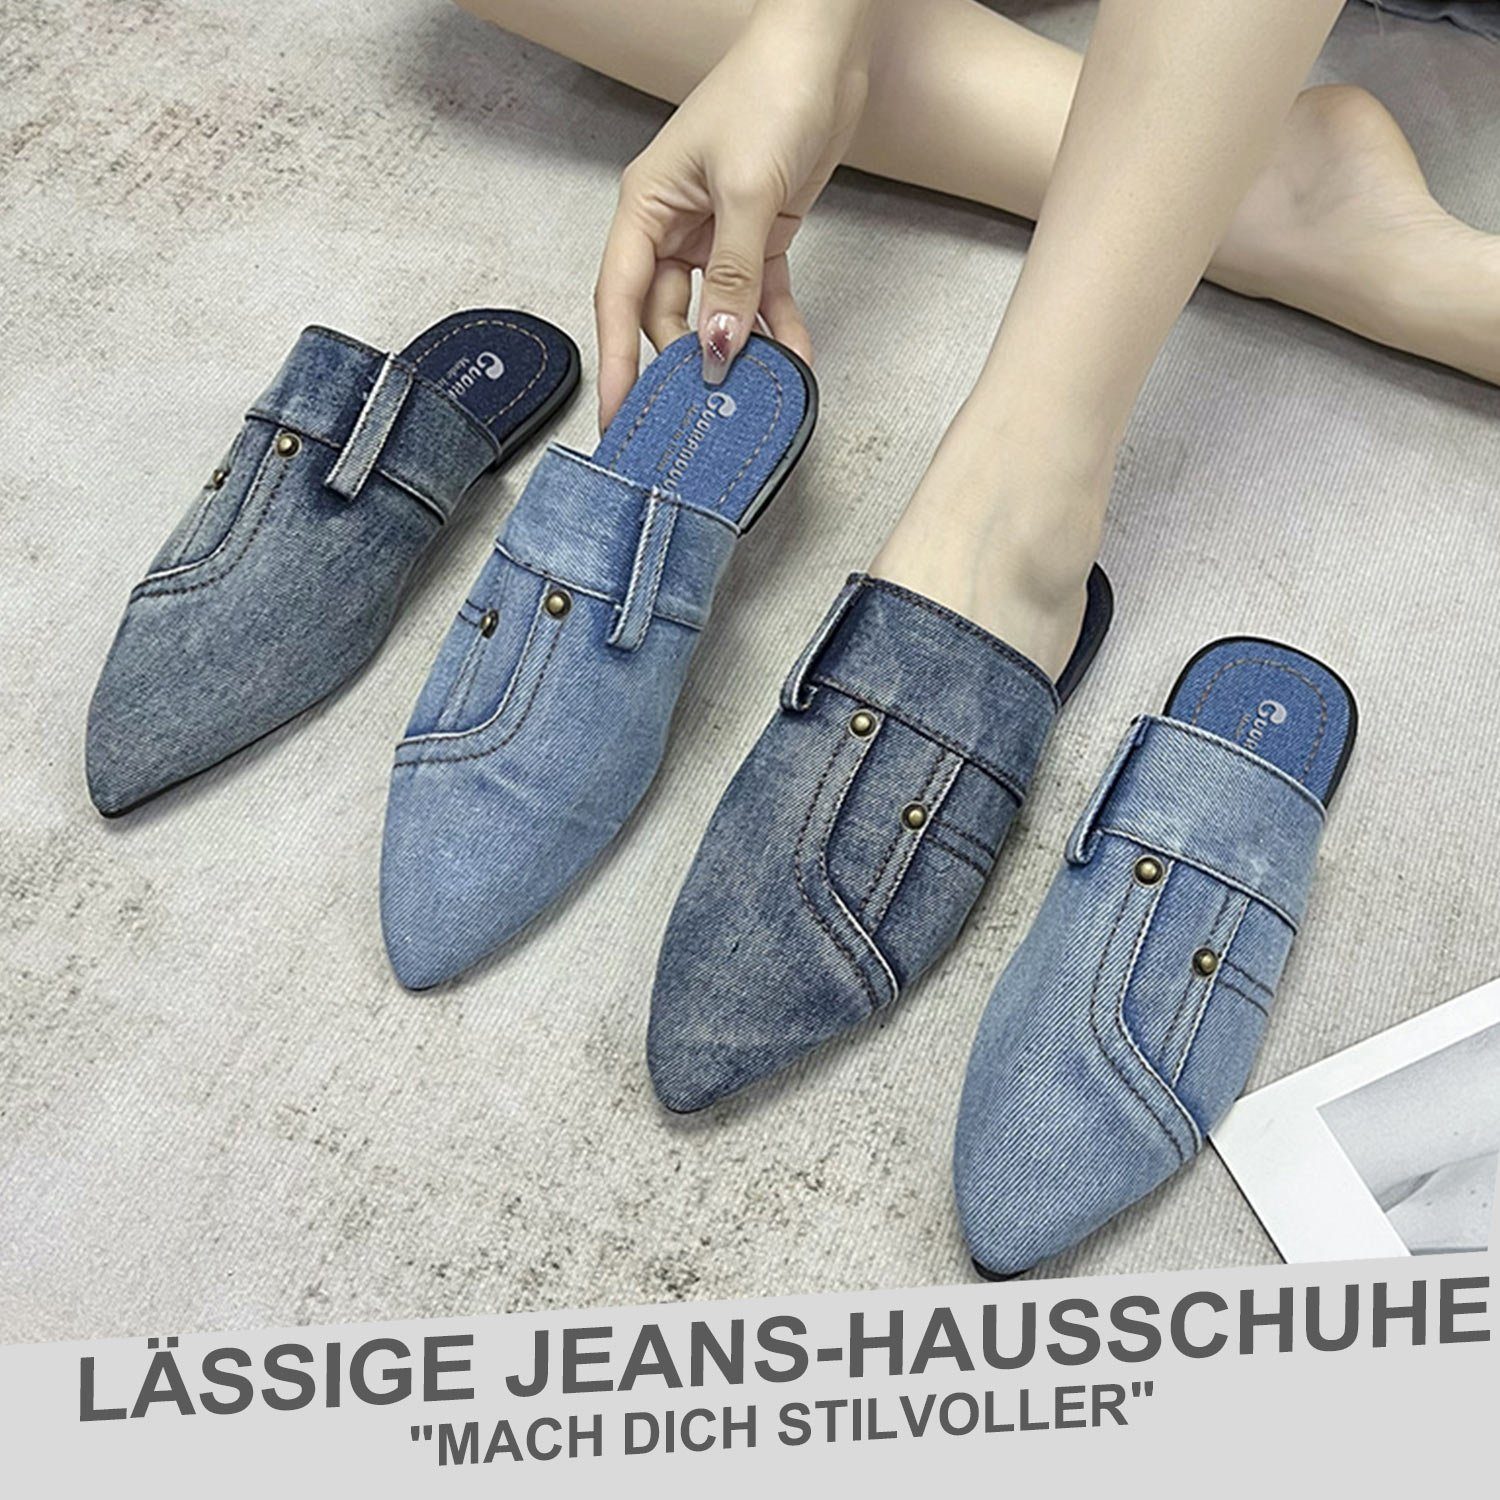 Damen Pantoffel Mode Spitz Blau Denim Flats Hausschuhe Daisred Sandalen